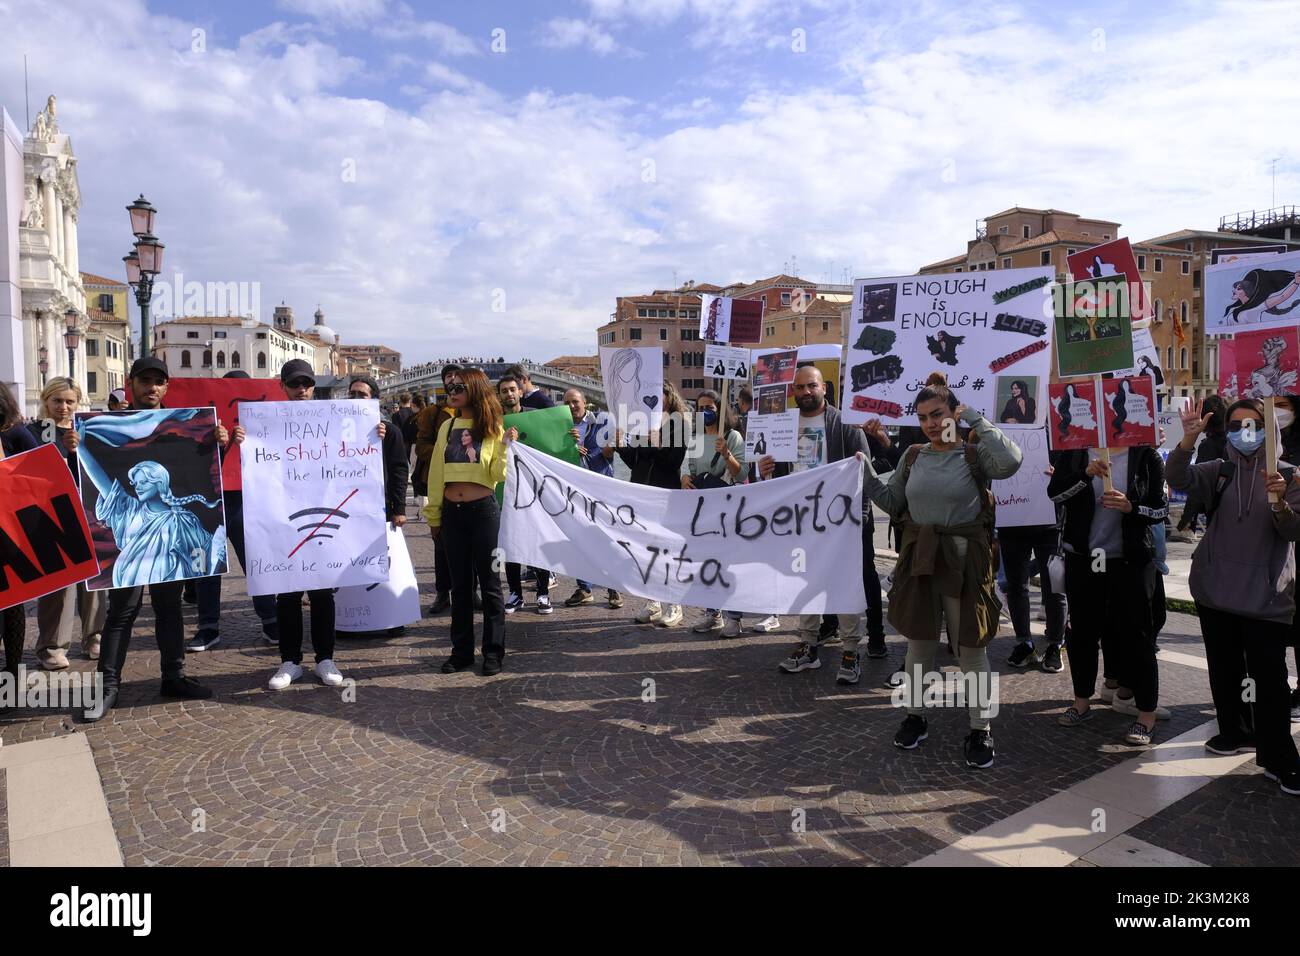 Des jeunes filles iraniennes protestent devant la gare de Venise et affichent un panneau indiquant « Woman Freedom Life » sur 27 septembre 2022 à Venise, en Italie. Banque D'Images